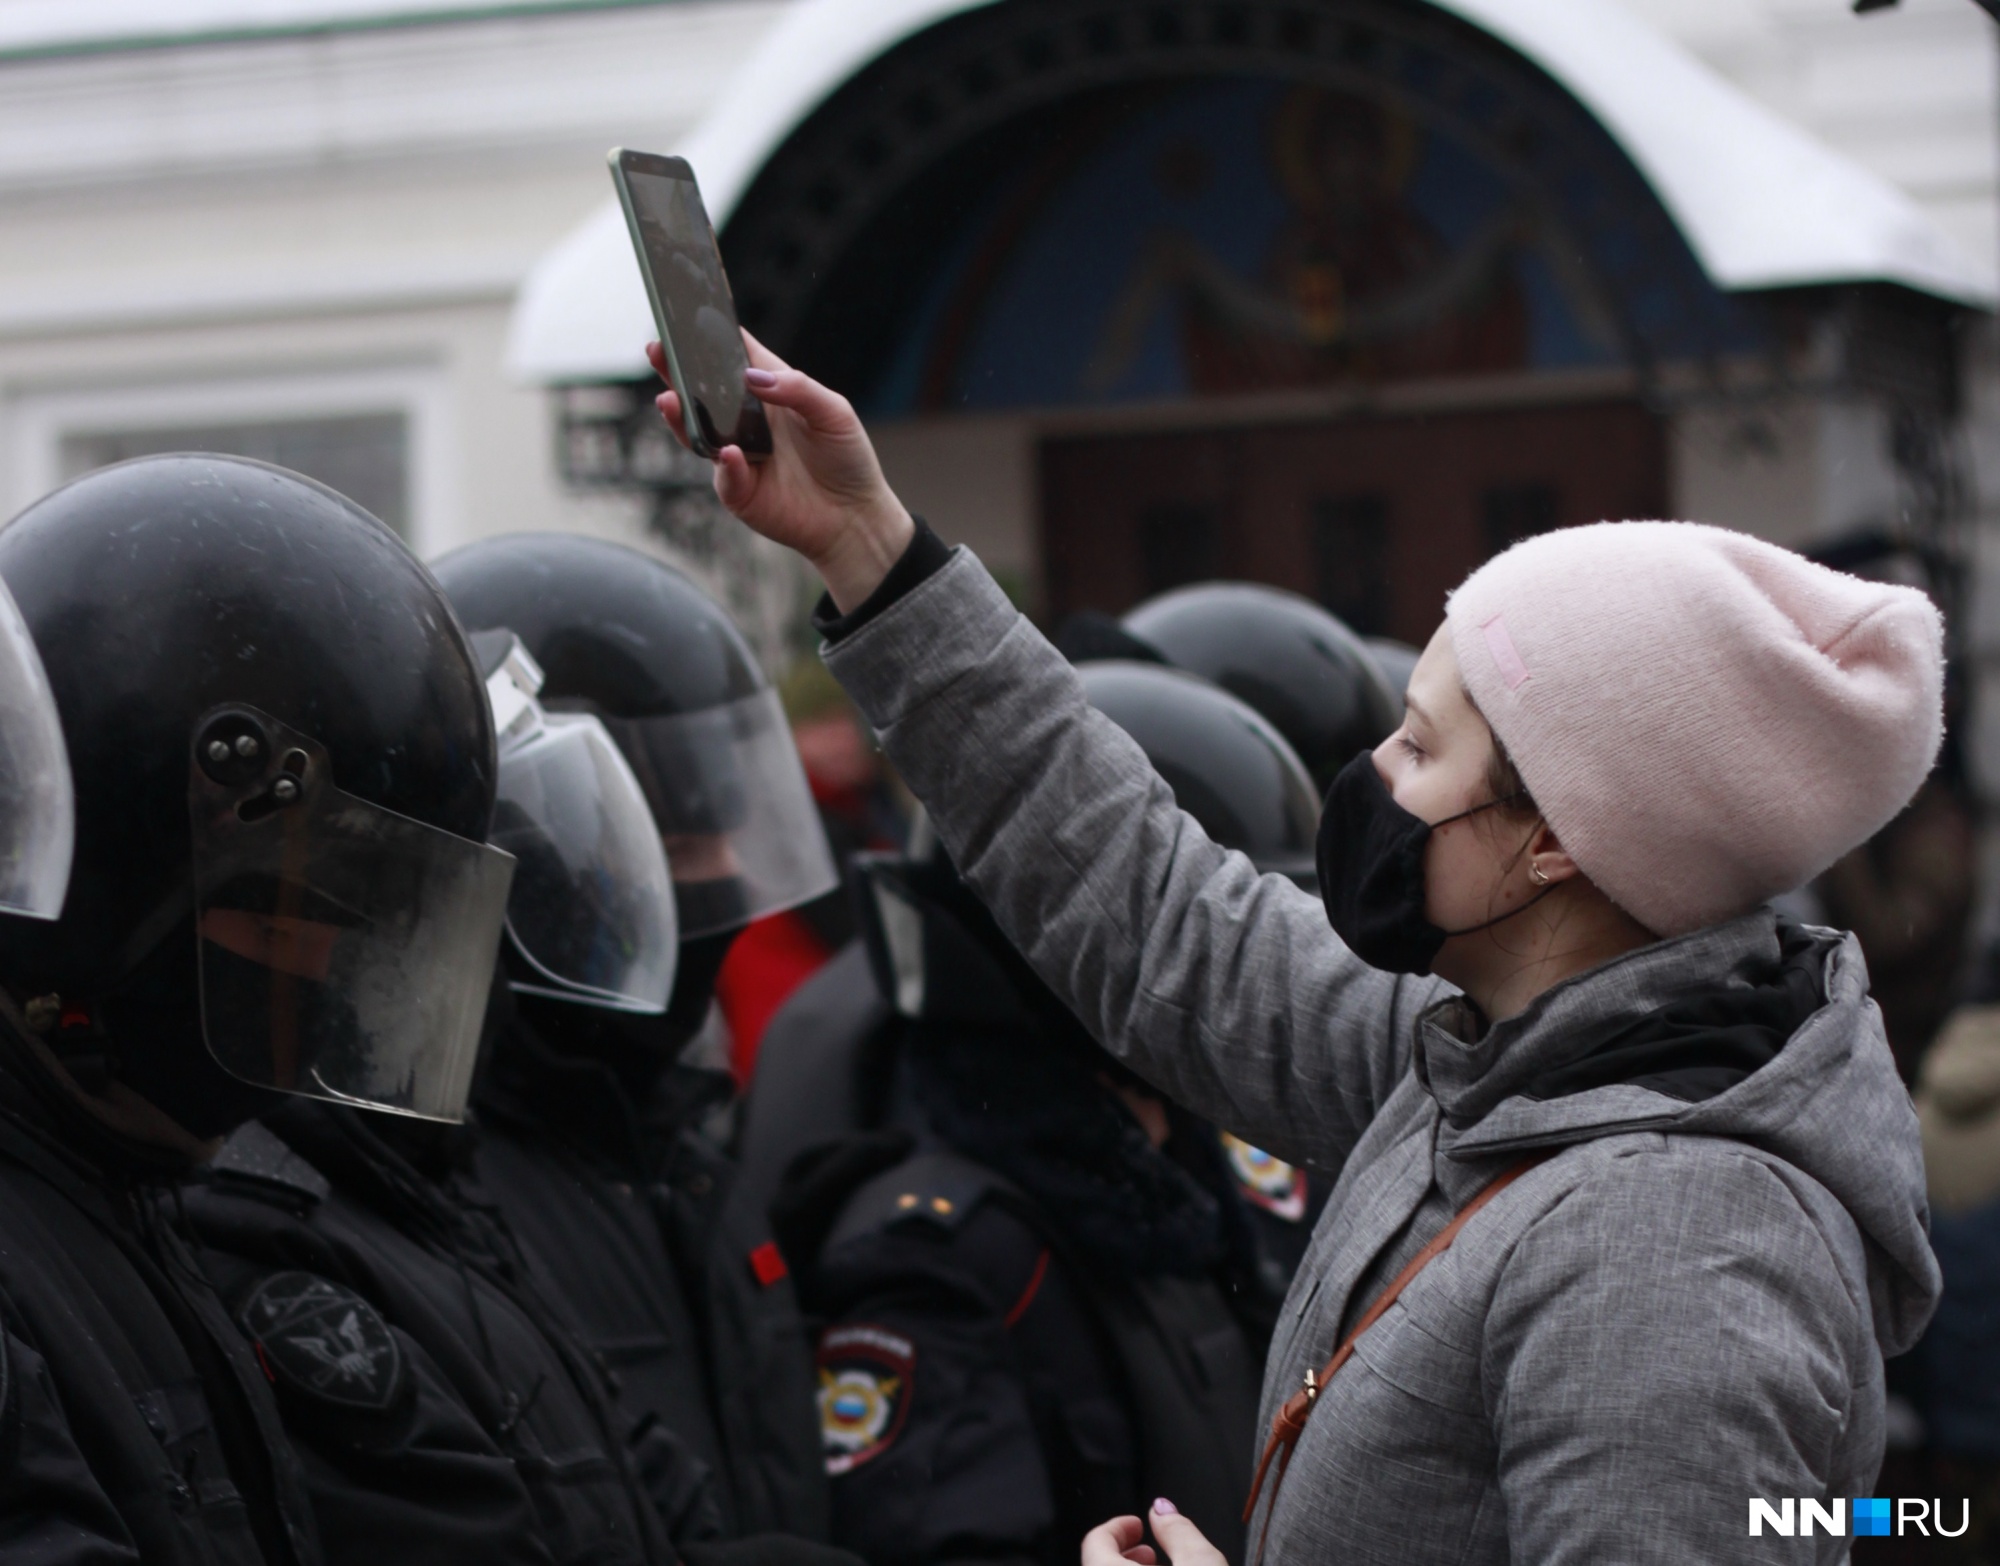 «Здесь людей как невест воруют»: как прошел митинг в поддержку Навального в Нижнем Новгороде